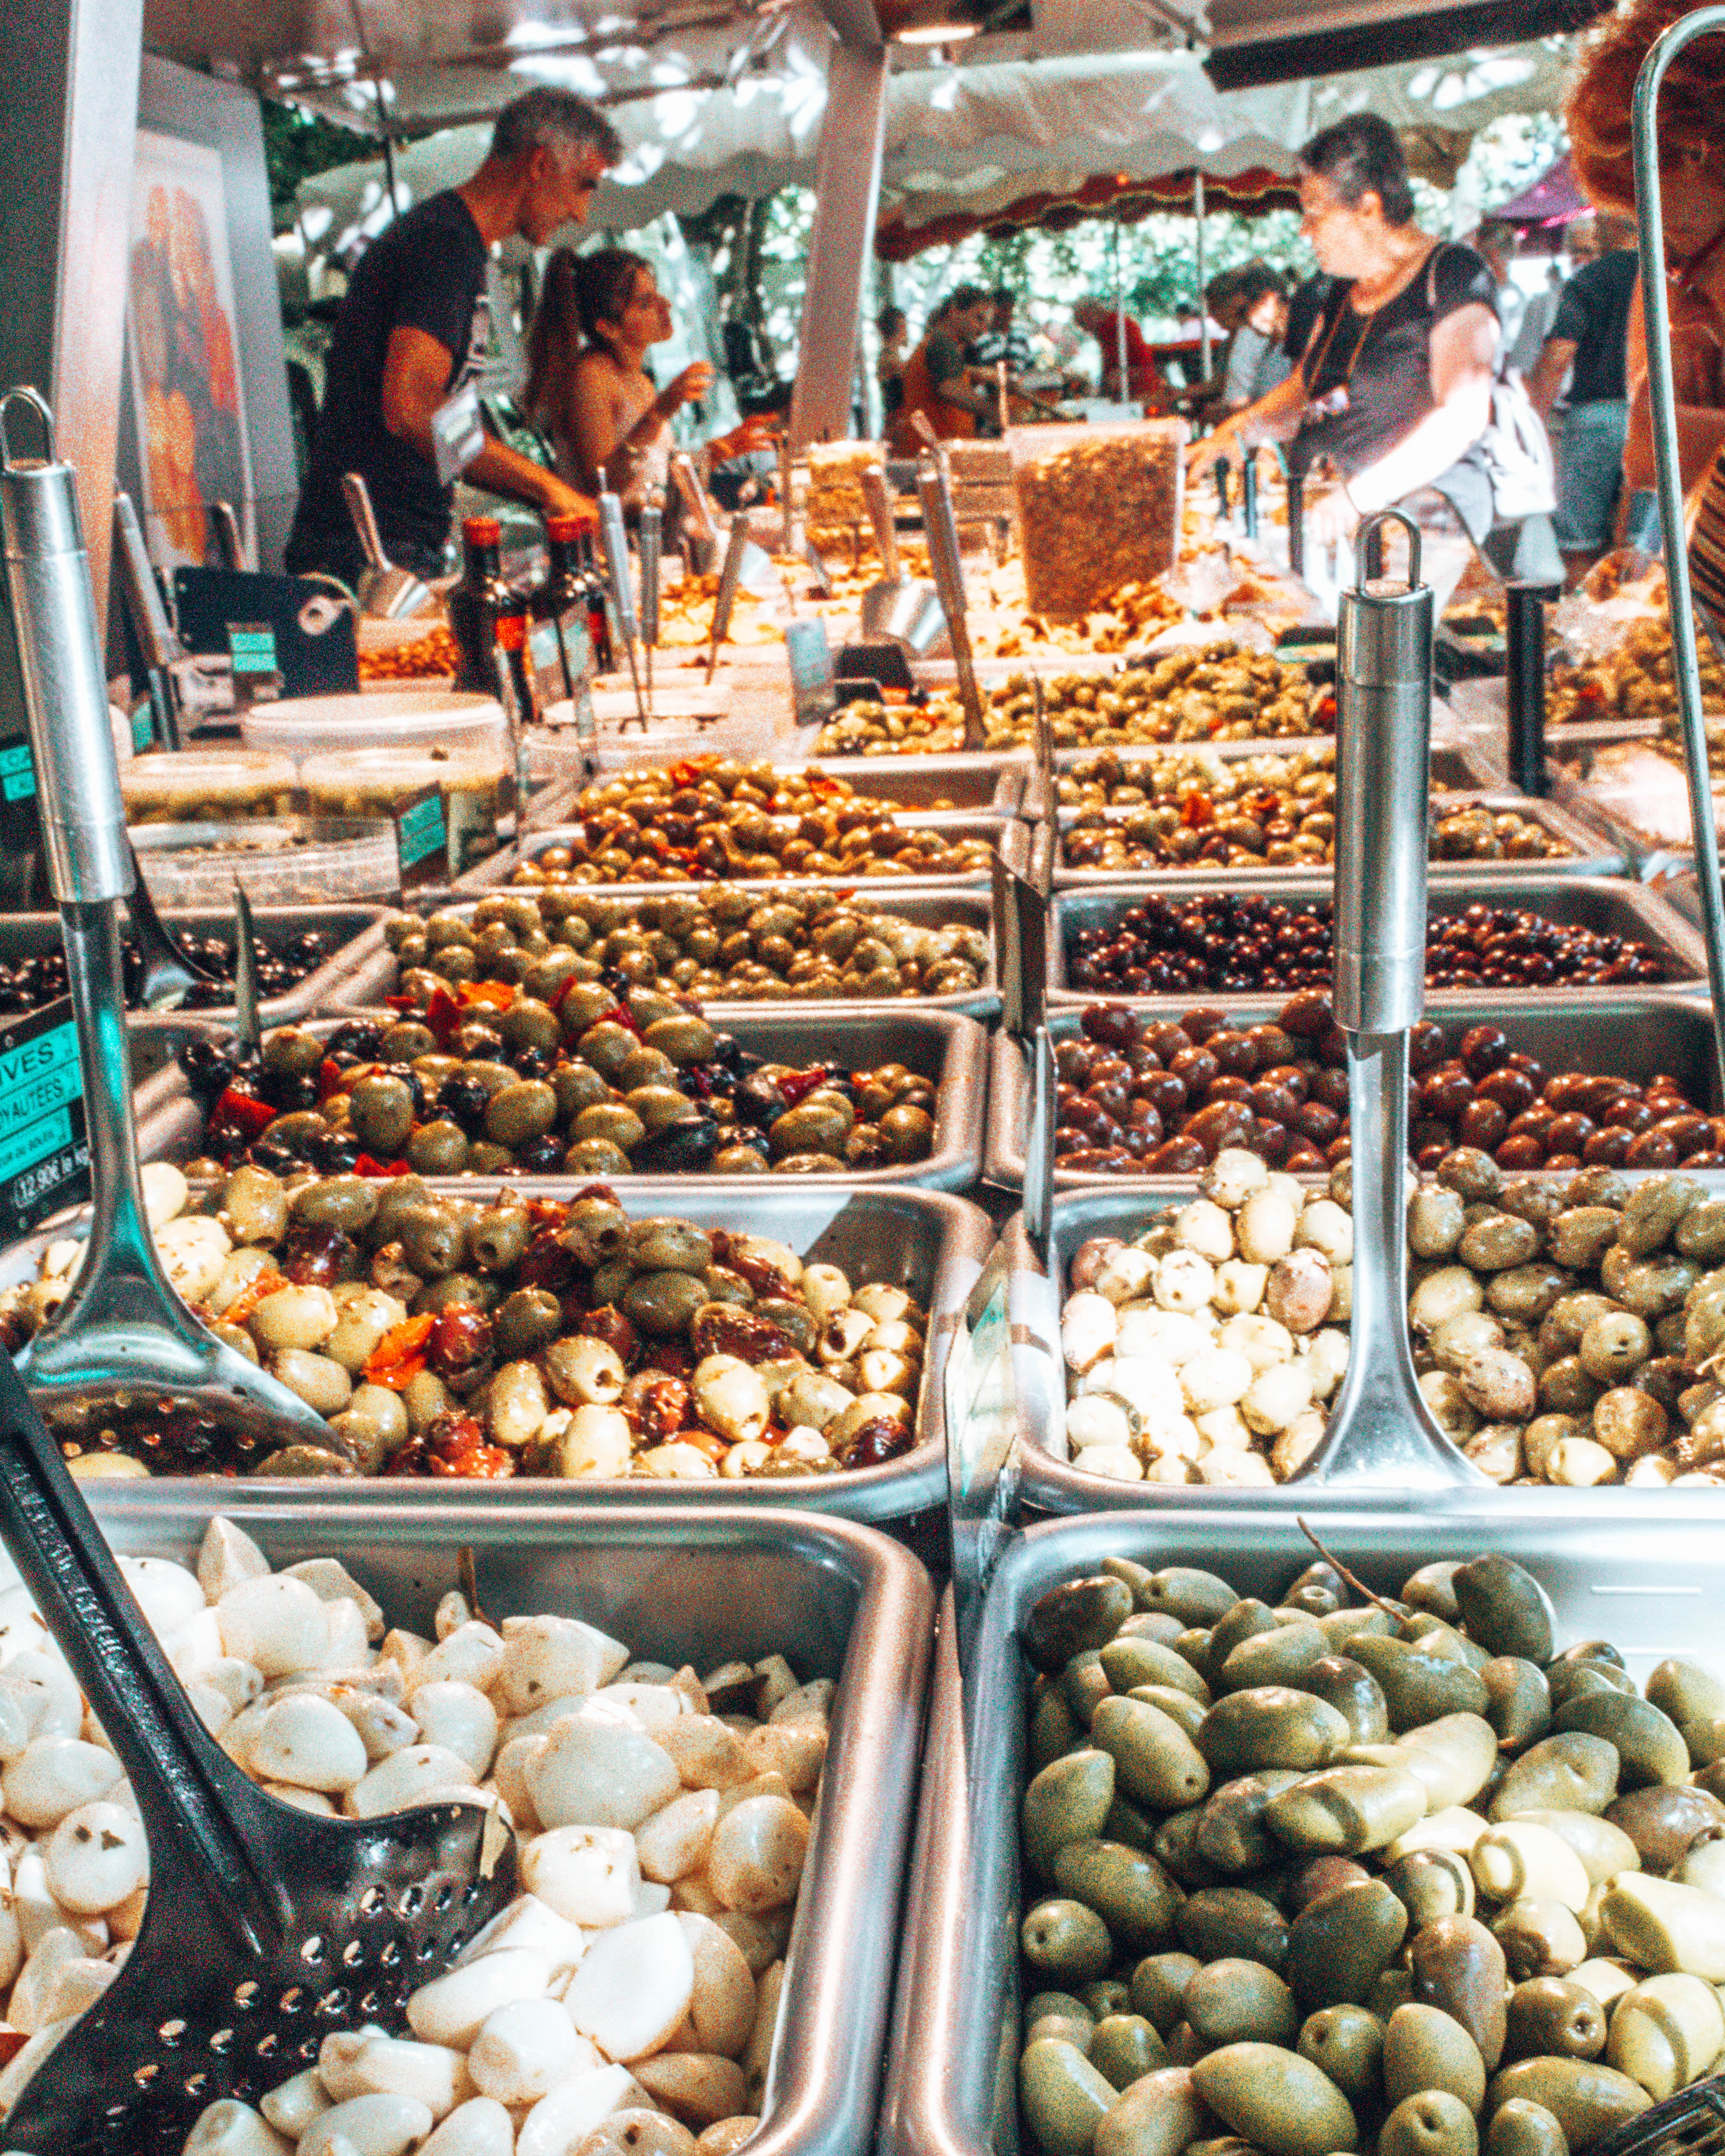 Olives at the market in Eauze France